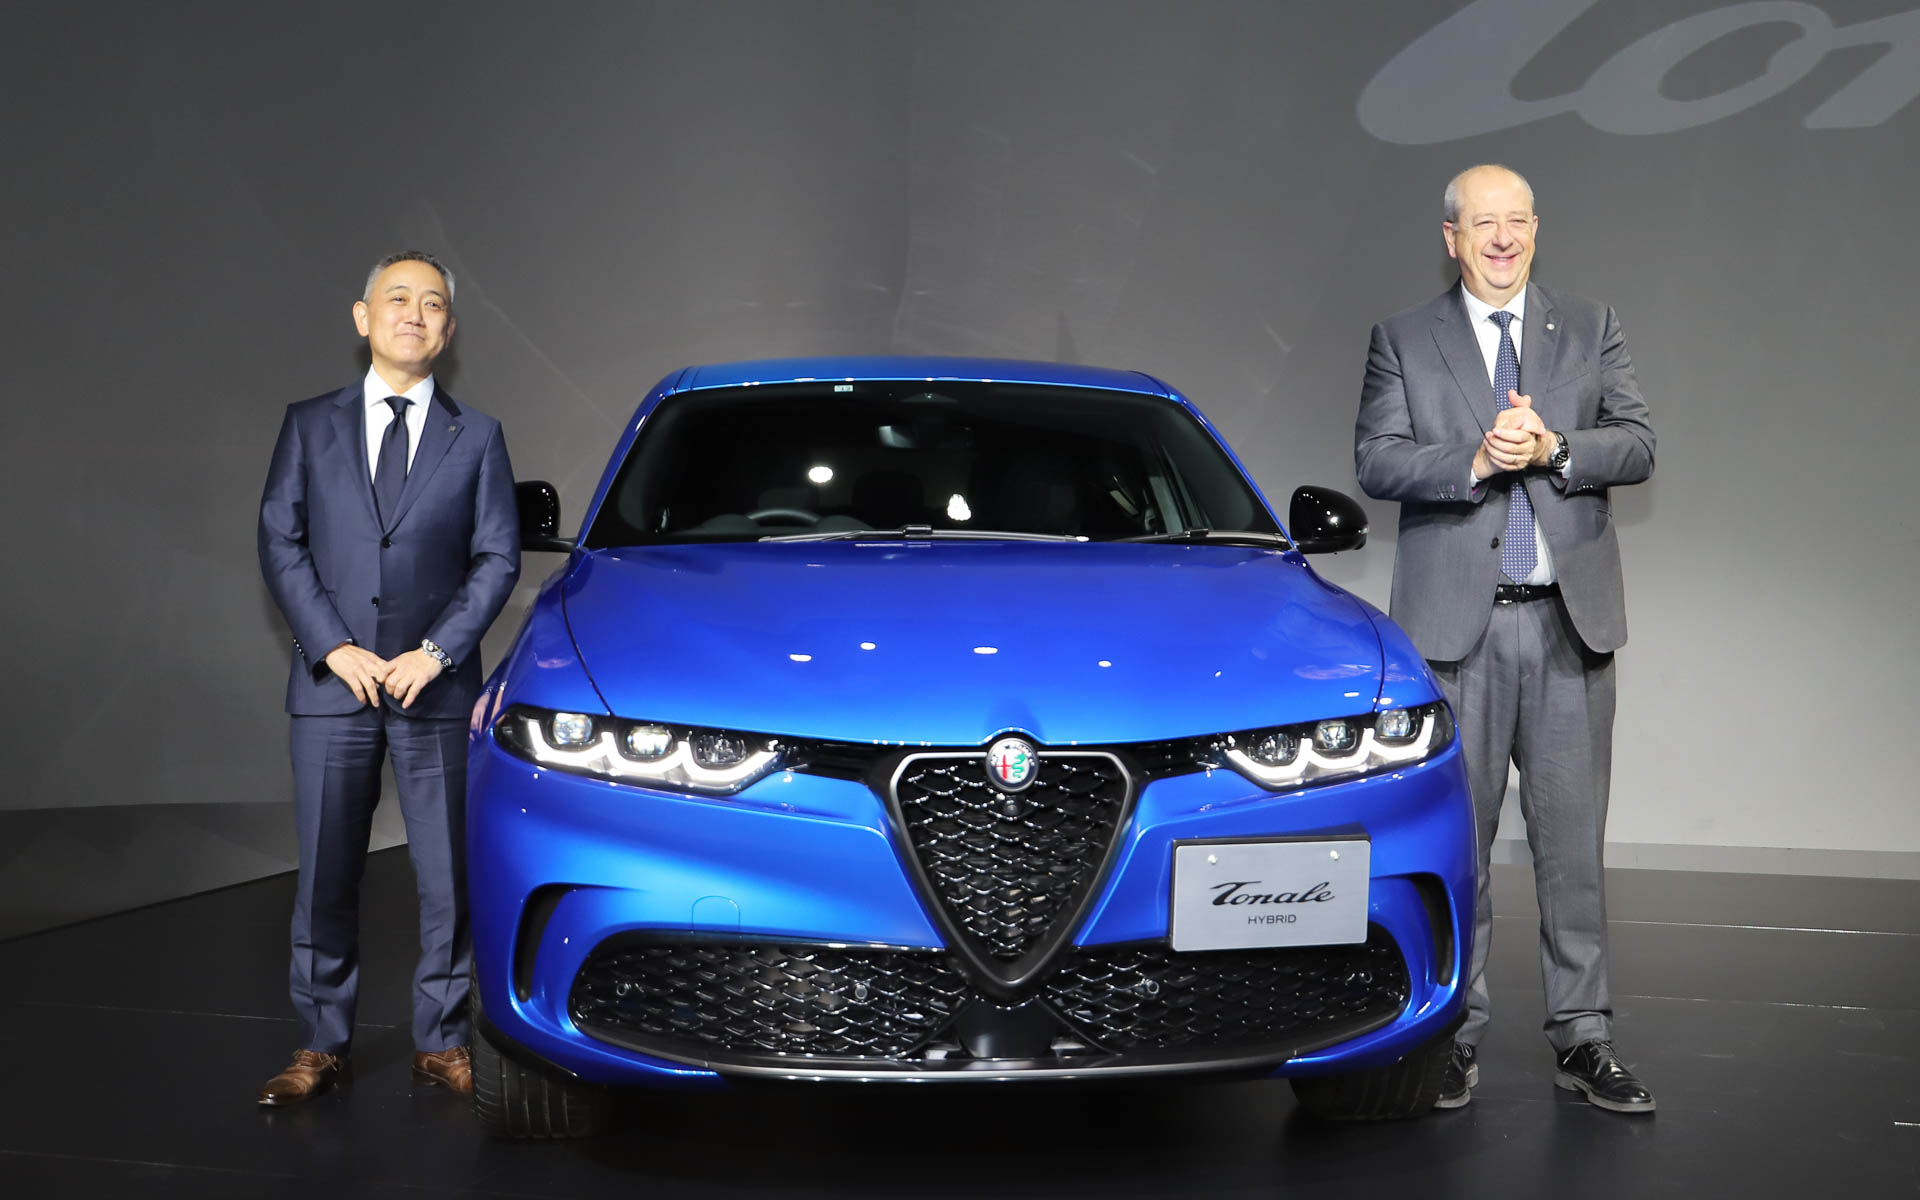 アルファ ロメオ、新型SUV「トナーレ」発表会 新開発エンジンや先進